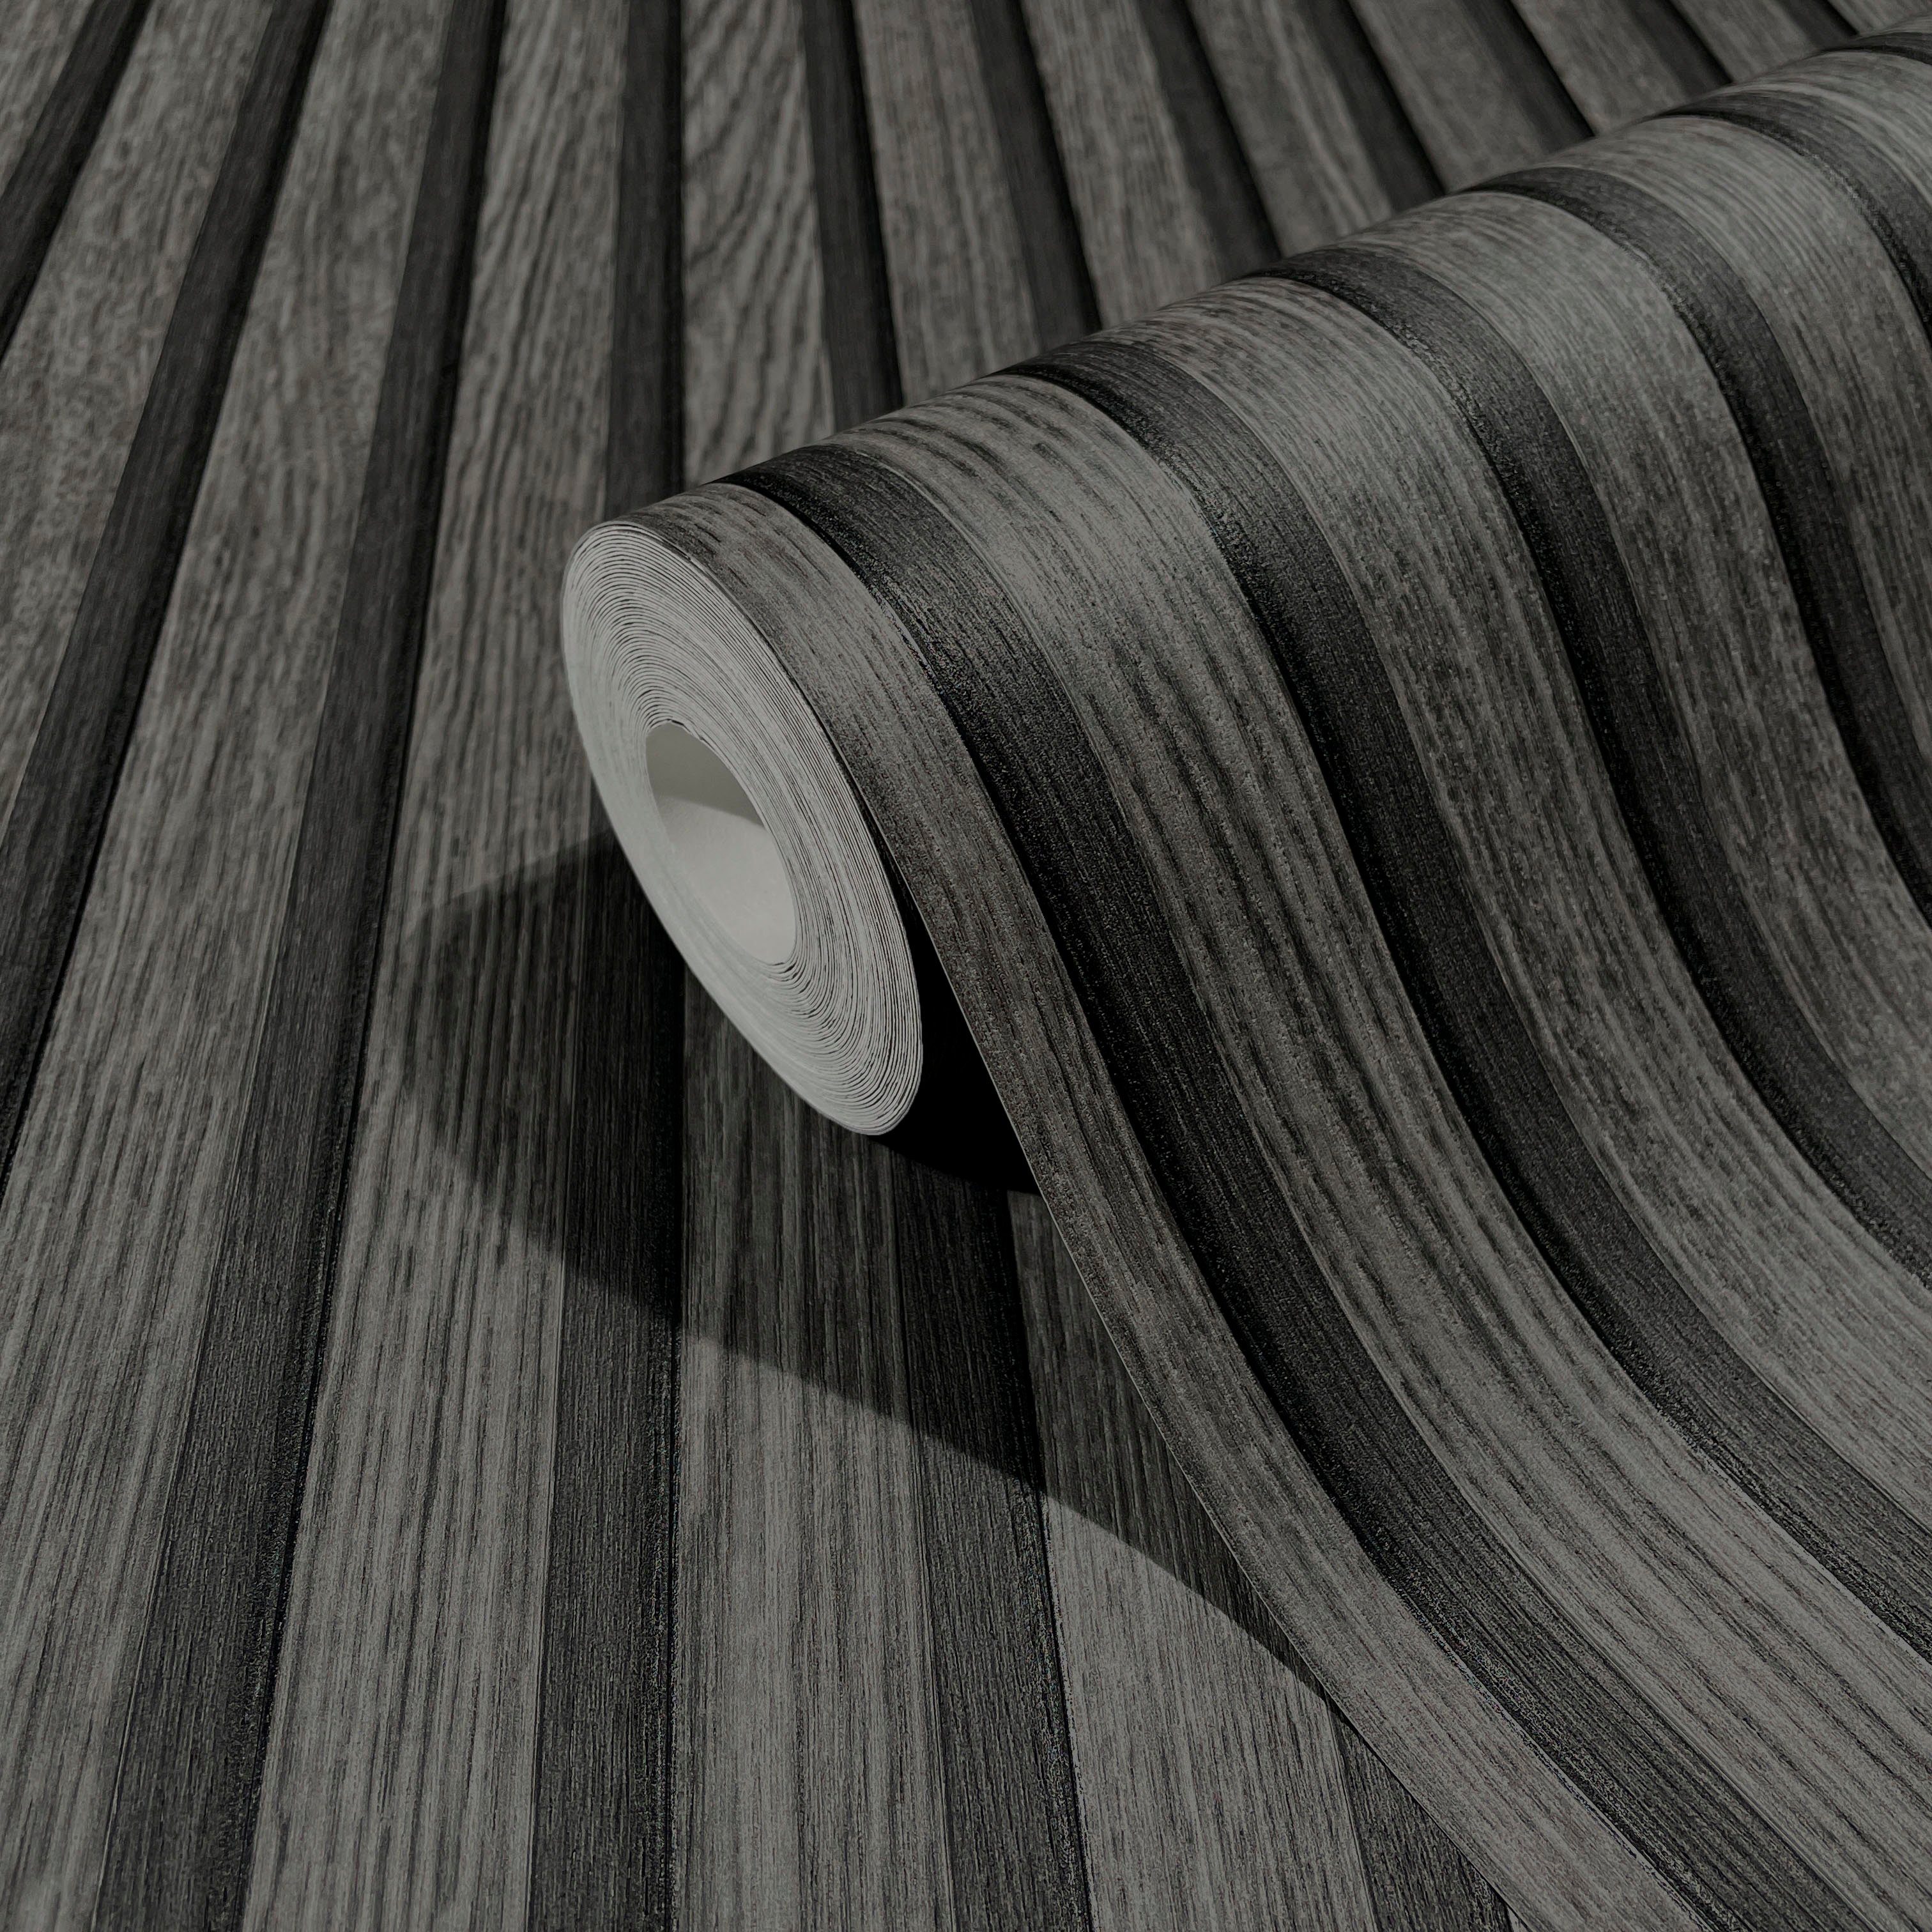 Vliestapete Marburg Timber, moderne für Wohnzimmer matt, Küche 3D Schlafzimmer Vliestapete schwarz geprägt,